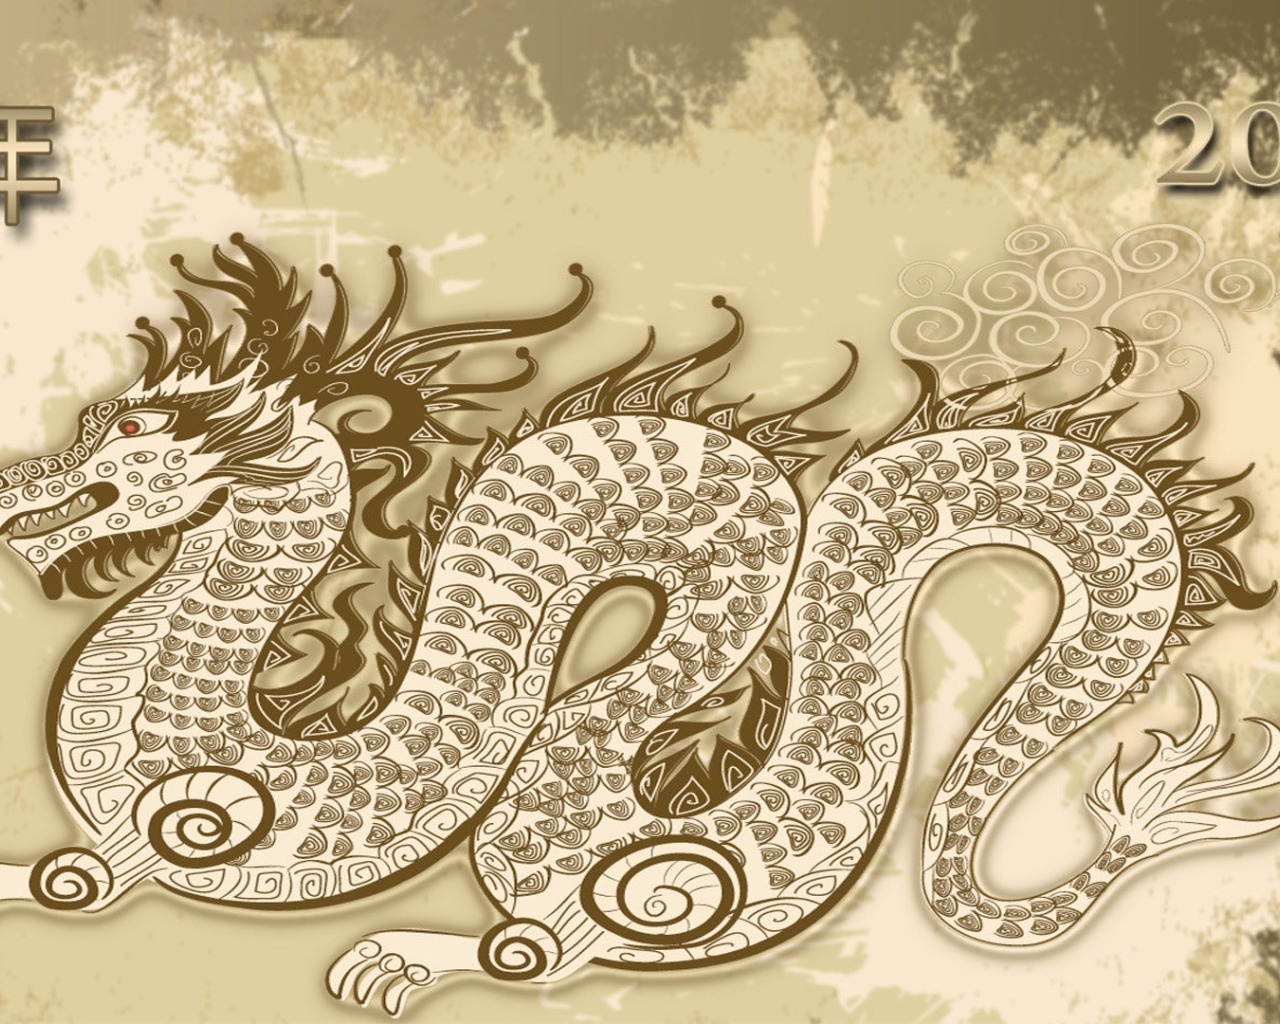 Козерог дракон совместимость. Восточный дракон. Дракон и змея совместимость. Дракон 2012. Женщина дракон мужчина змея совместимость.